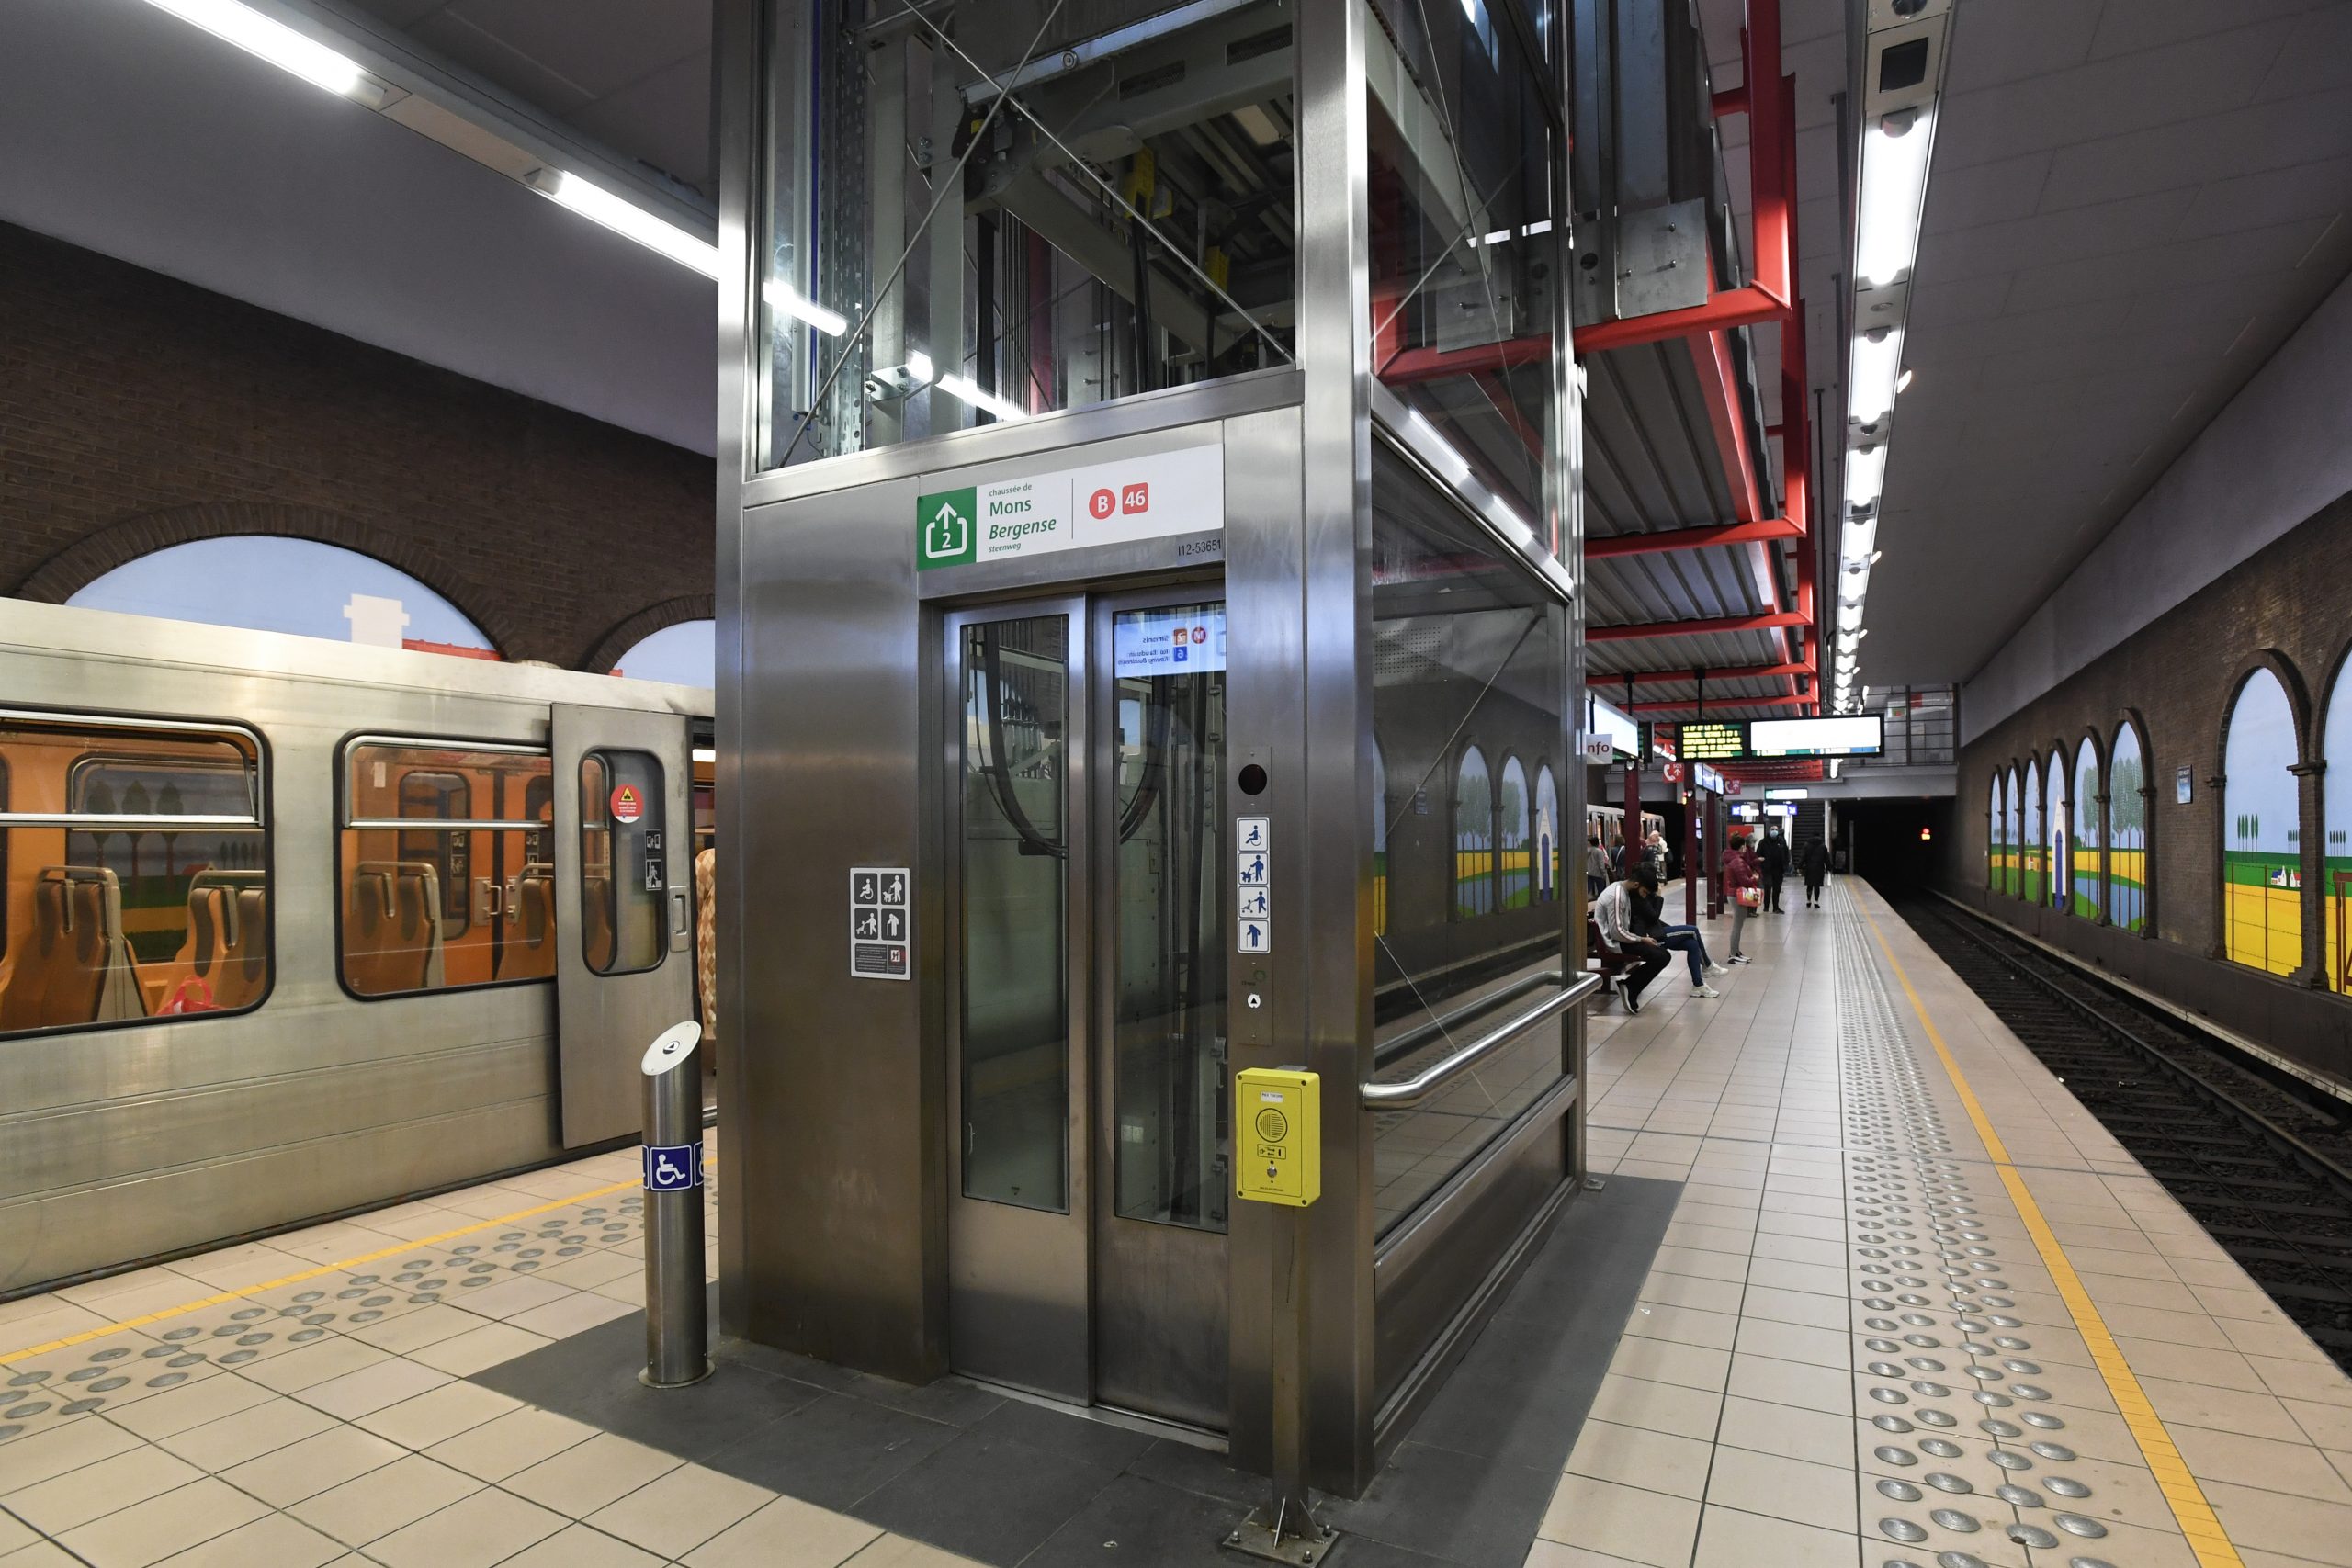 Brussel druk met renovatie metrostations